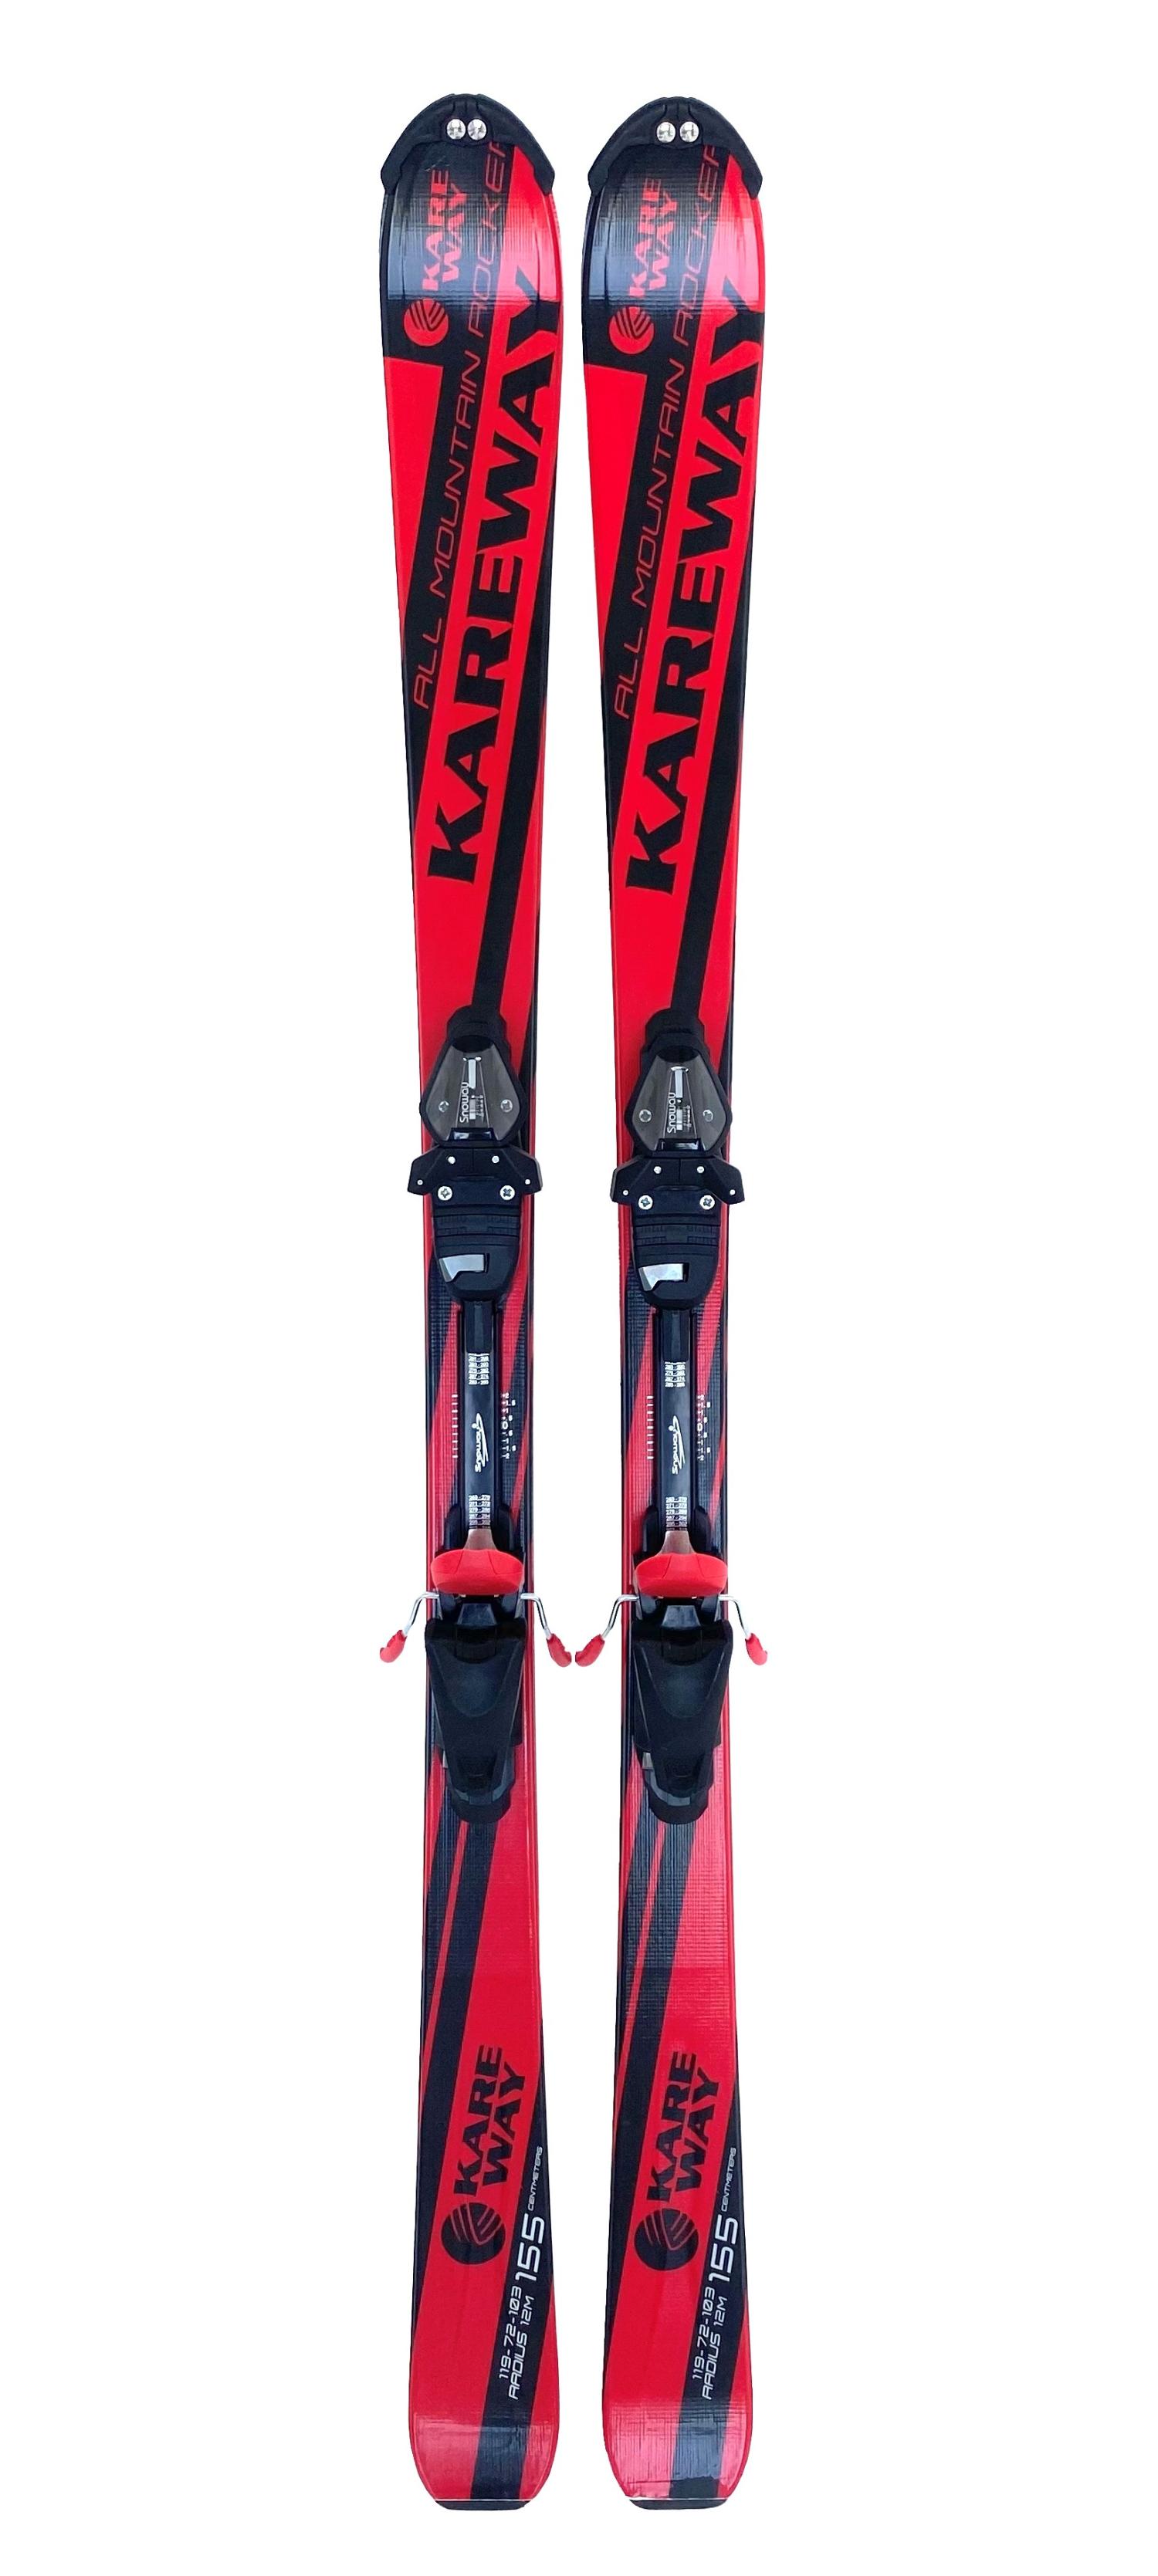     Lightning Kareway Black/Red + . Snoway SX 10